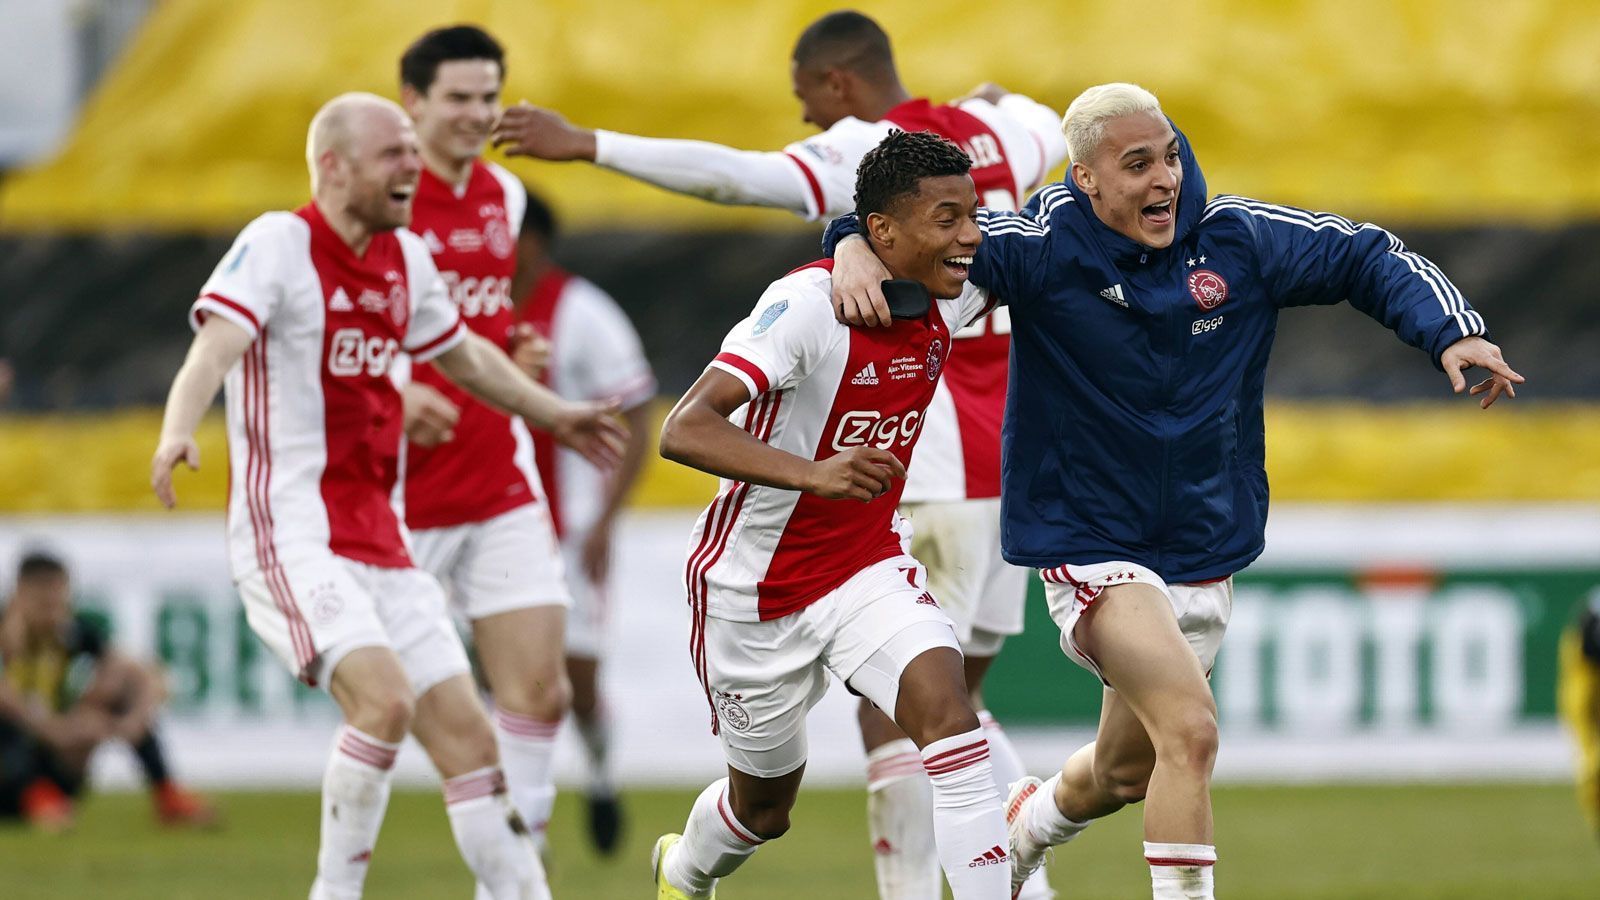 
                <strong>Niederlande: Ajax Amsterdam</strong><br>
                Lange Zeit hielt Vitesse Arnheim im Endspiel um den KNVB-Pokal gut dagegen, doch der Last-Minute-Treffer von Ajax-Angreifer David Neres (2. v. r.) sicherte dem Traditionsklub einen knappen 2:1-Erfolg. Es ist der insgesamt 20. Pokalsieg für den Verein aus der niederländischen Hauptstadt, nur wenige Tage später wurde auch noch die Meisterschaft eingetütet. "Alle Spieler haben eine gute Beziehung zueinander, die Mannschaft ist homogen. Die Jungs sind belastbar, geben alles füreinander und fordern sich gegenseitig heraus", begründete Trainer Erik ten Hag abschließend den Double-Gewinn.
              